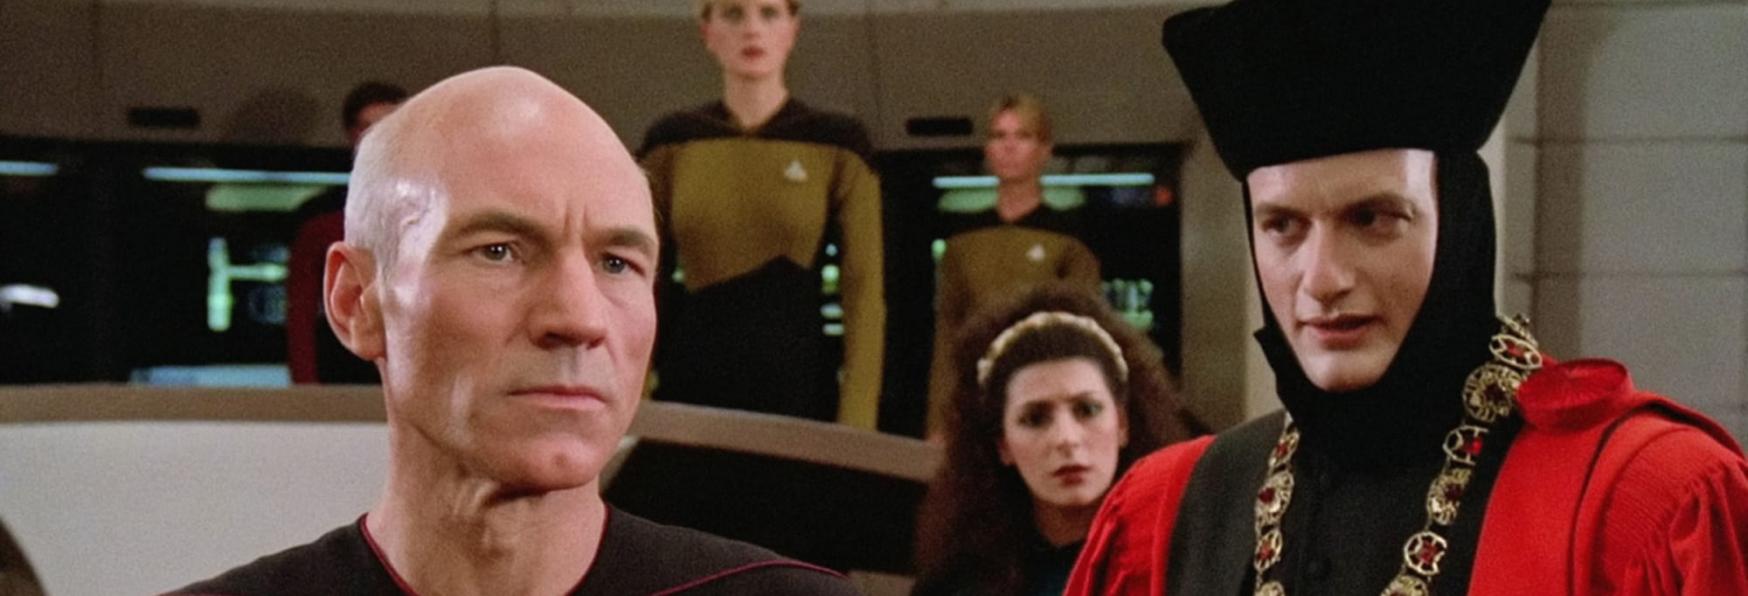 Star Trek: Picard 2 - il Teaser Trailer Conferma un Grande Ritorno